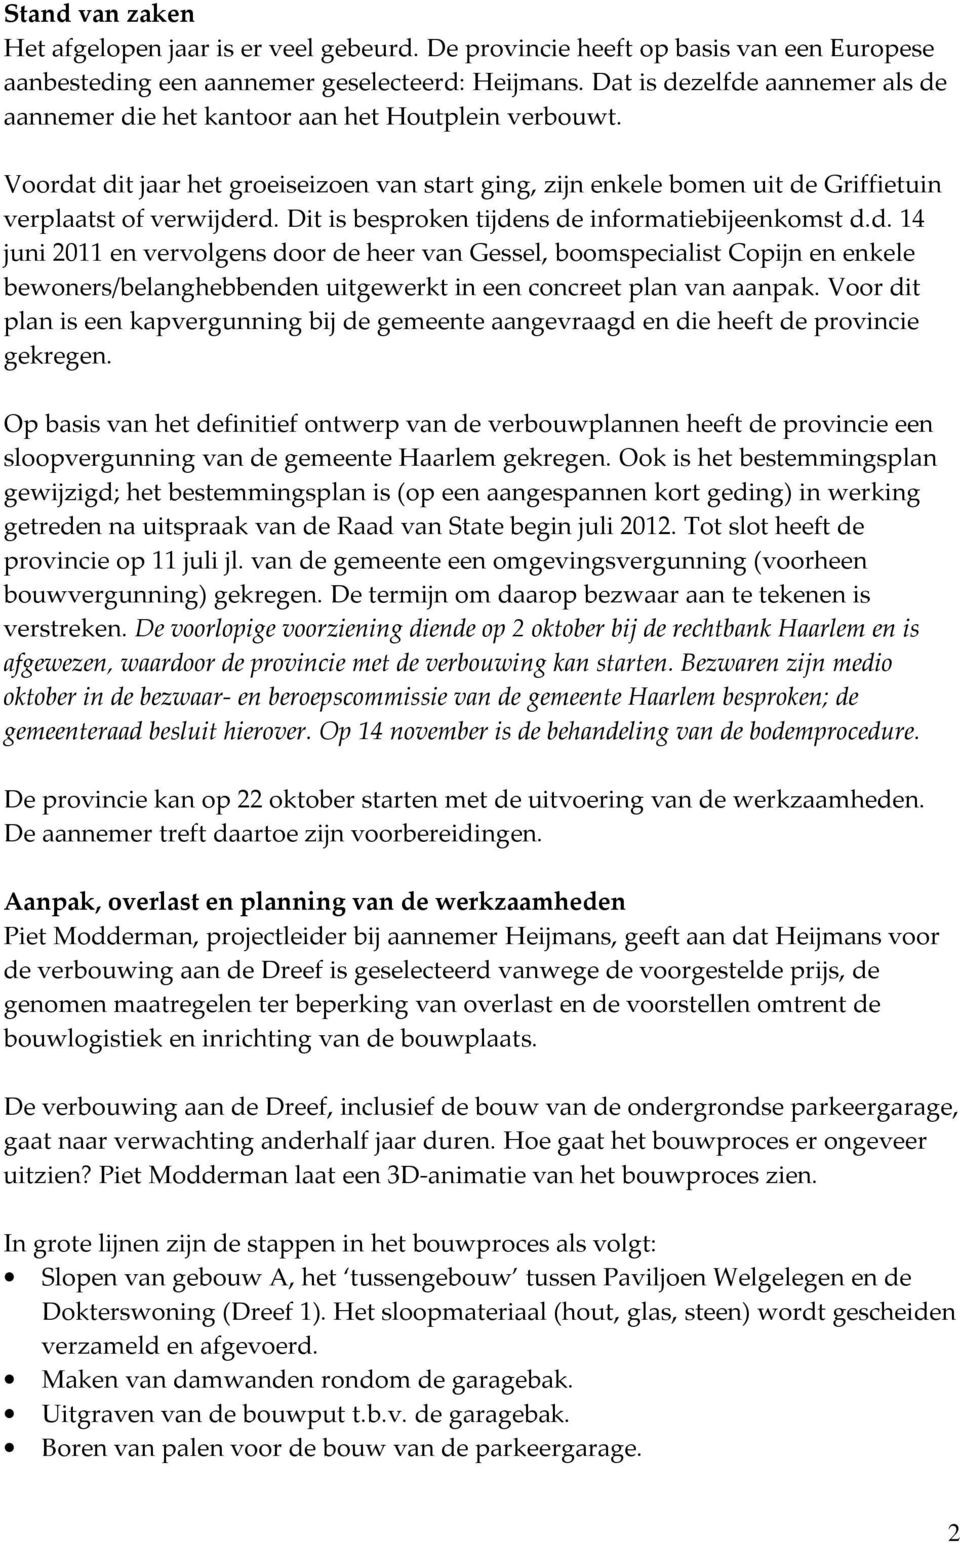 Dit is besproken tijdens de informatiebijeenkomst d.d. 14 juni 2011 en vervolgens door de heer van Gessel, boomspecialist Copijn en enkele bewoners/belanghebbenden uitgewerkt in een concreet plan van aanpak.